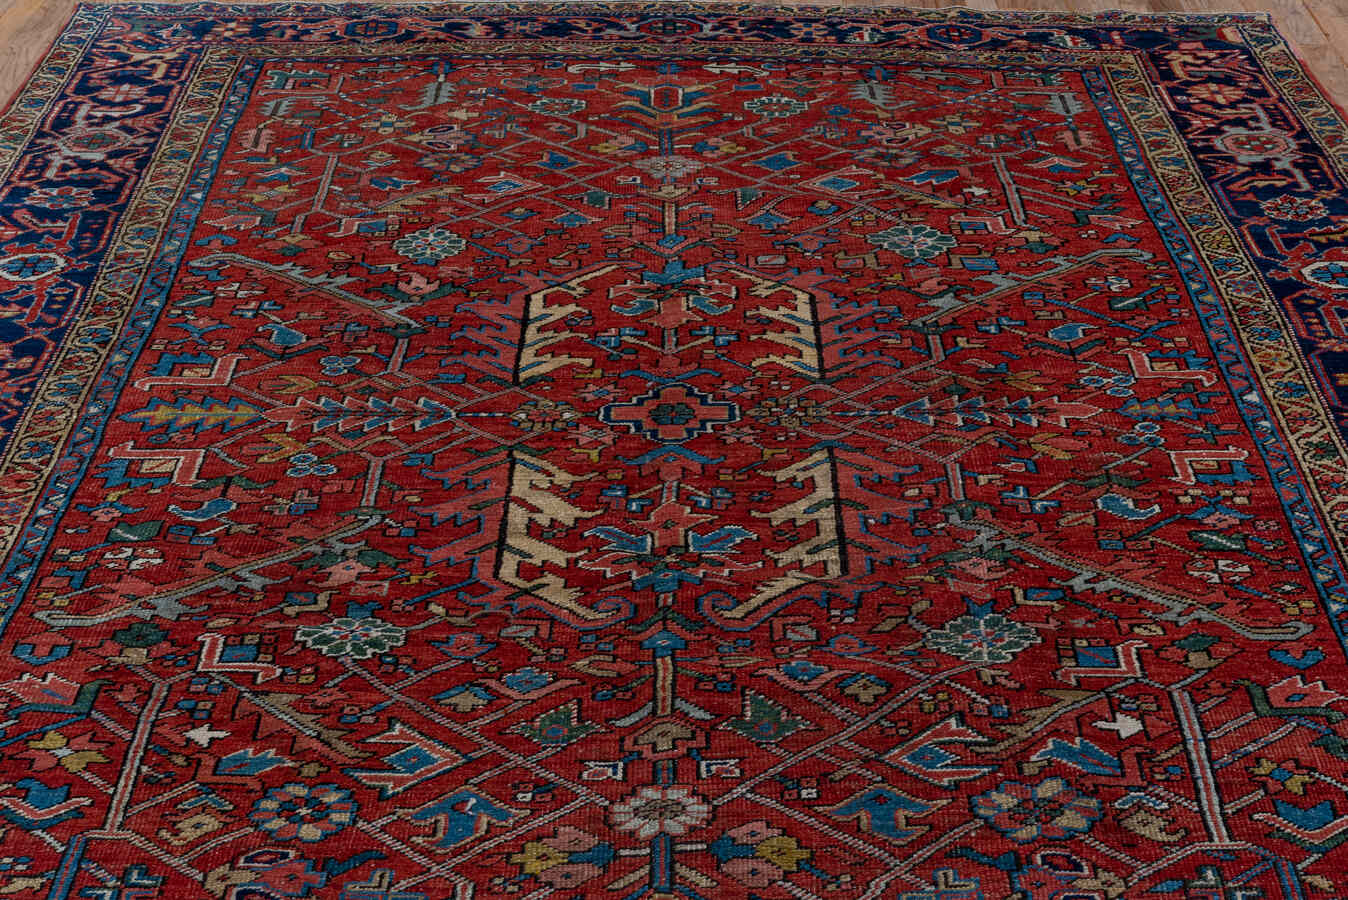 Antique heriz Carpet - # 56730